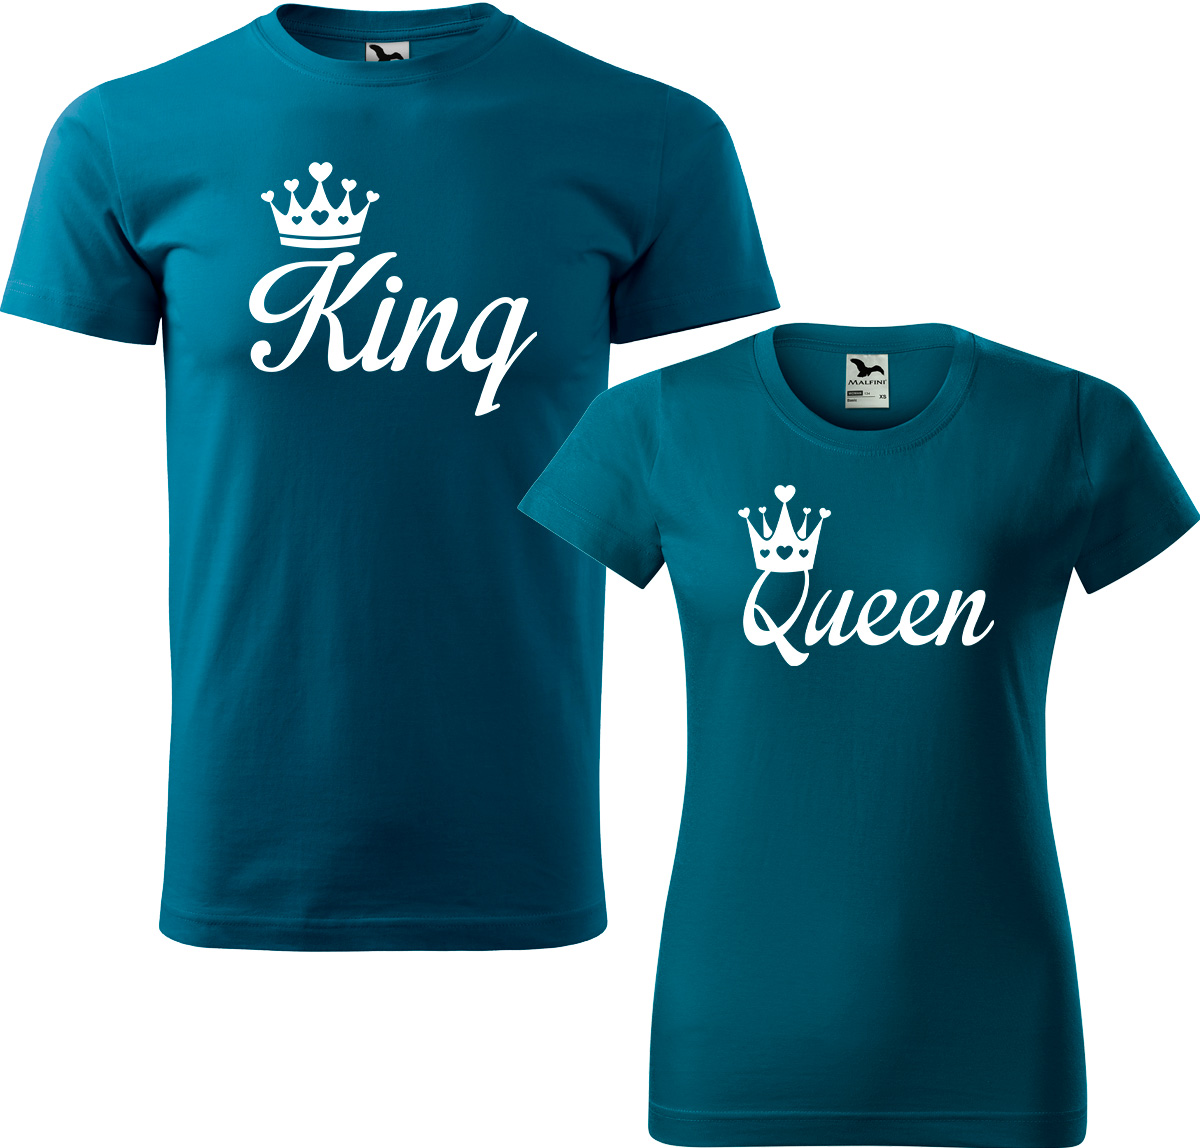 Trička pro páry - King a queen Barva: Petrolejová (93), Velikost dámské tričko: 3XL, Velikost pánské tričko: 3XL